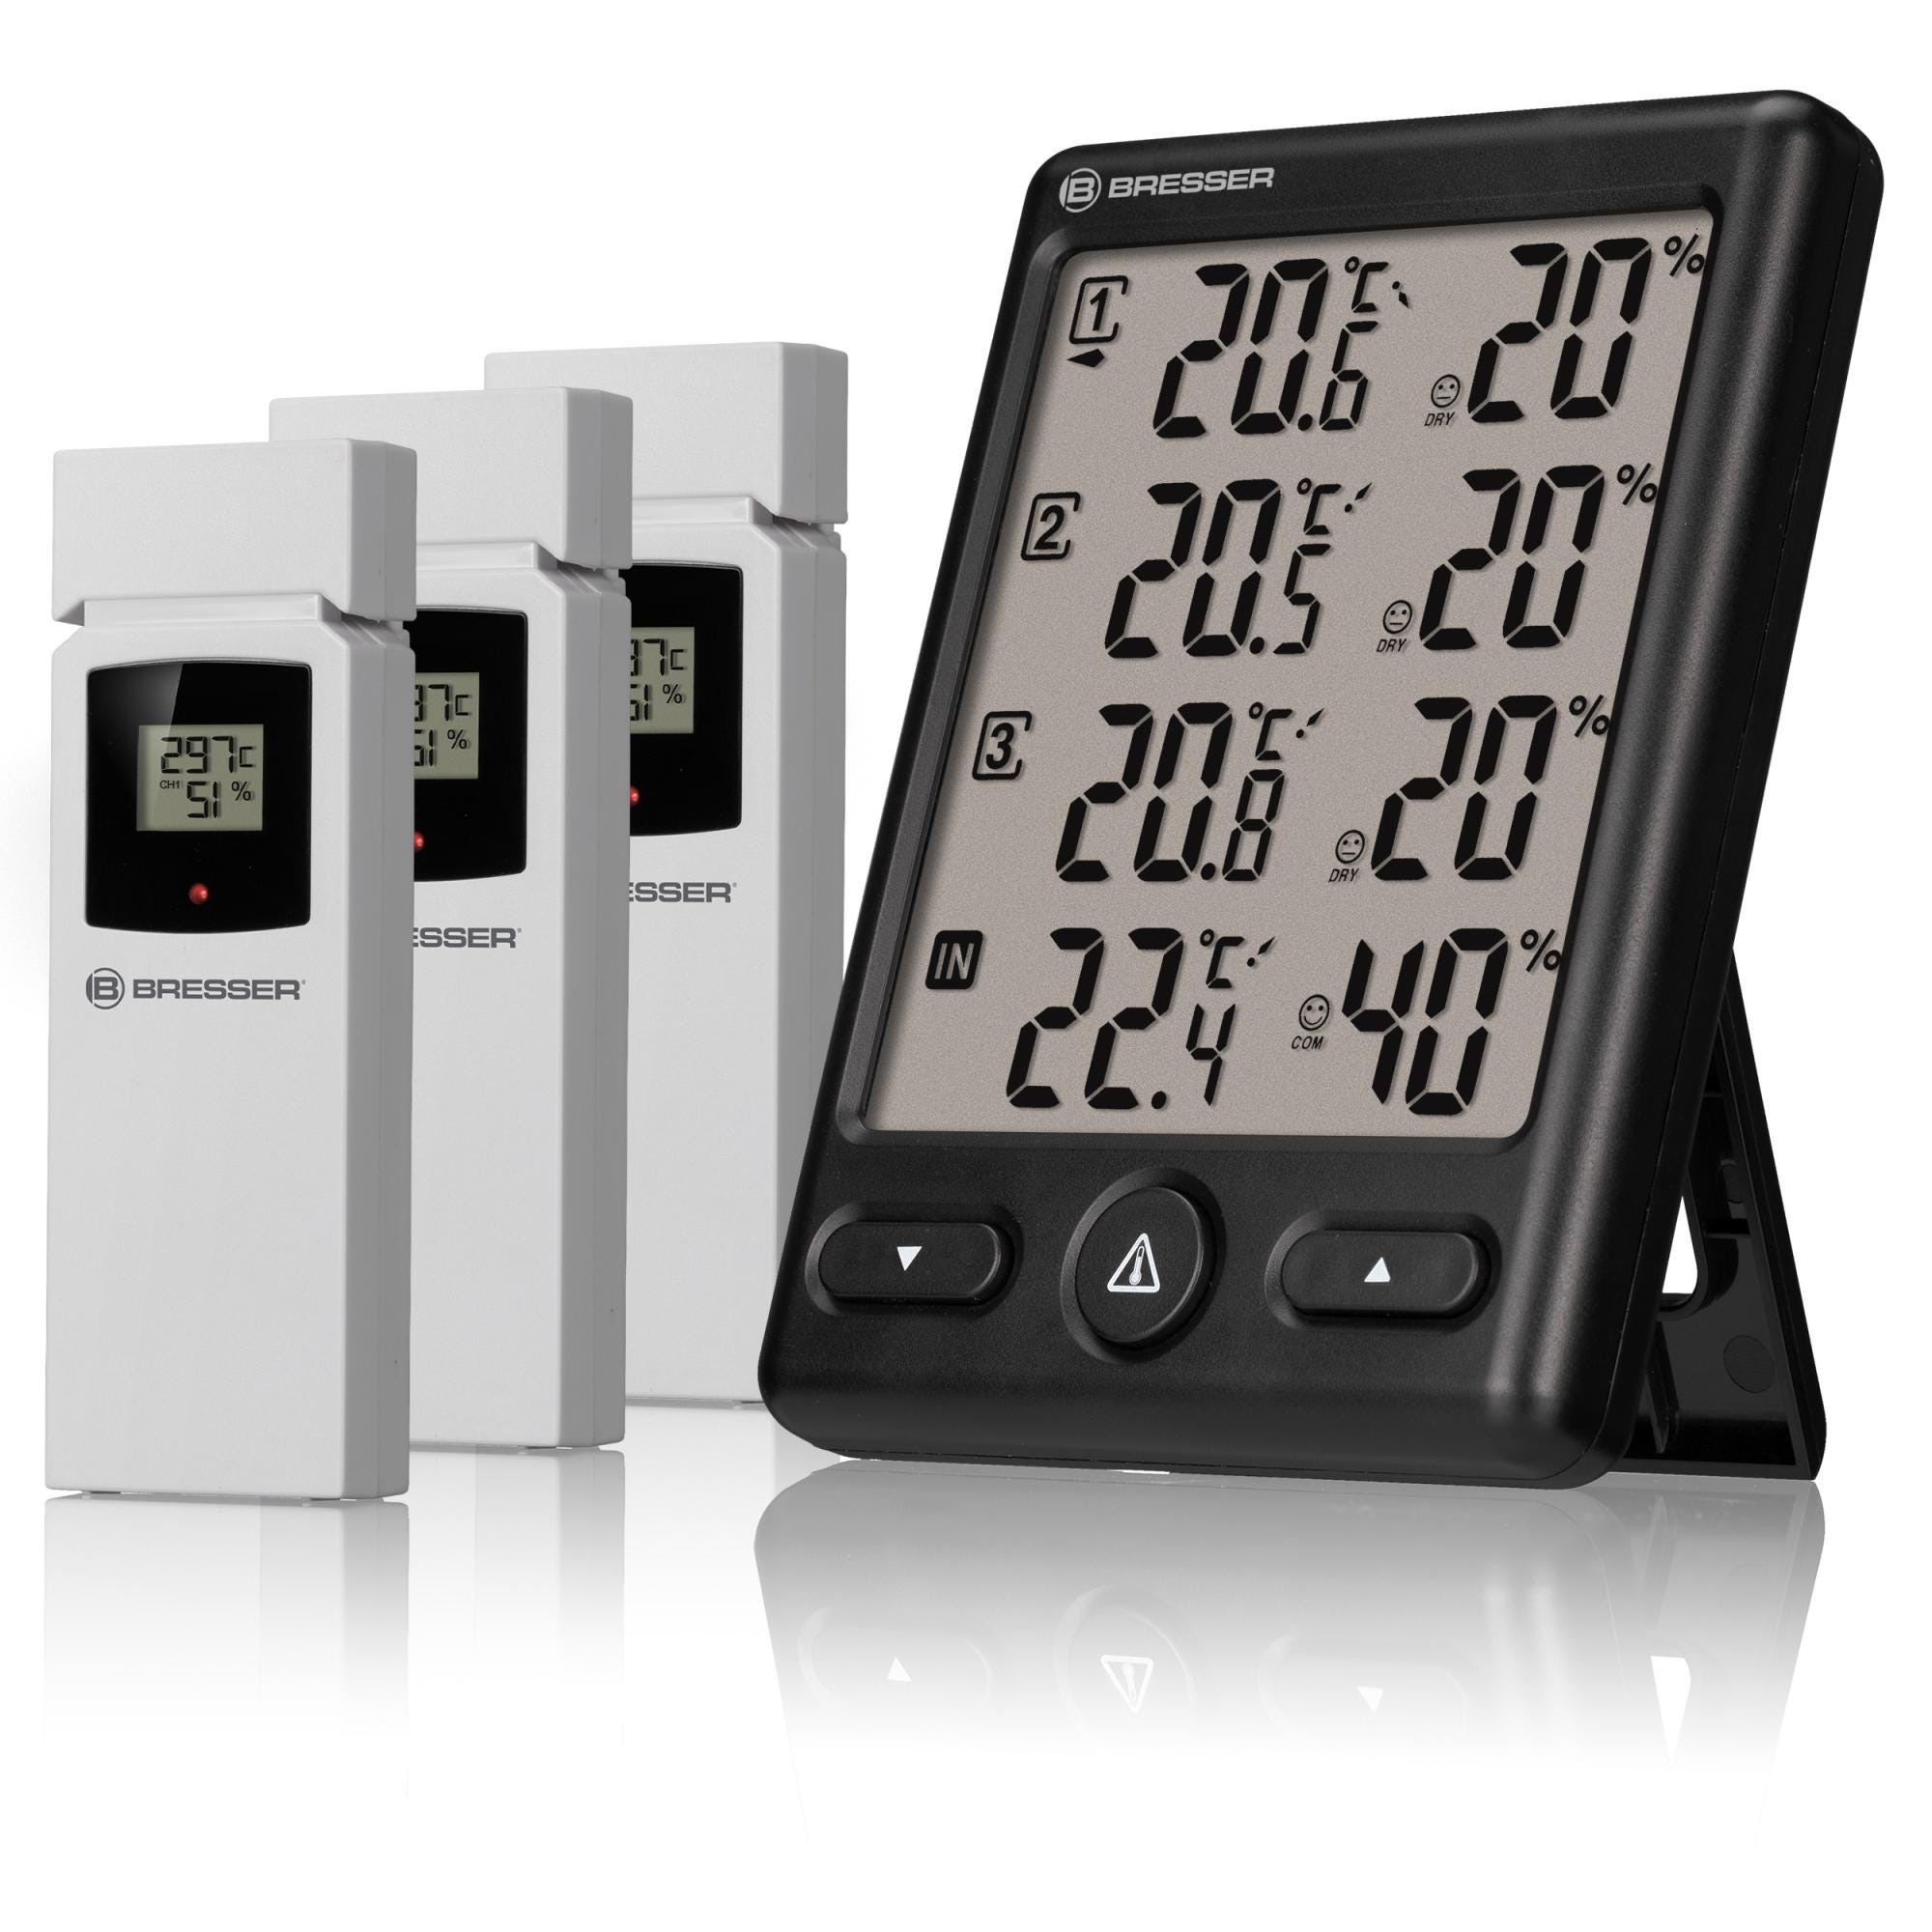 Station météo Bresser Thermomètre d intérieur avec hygromètre intégré et  affichage du niveau de confort